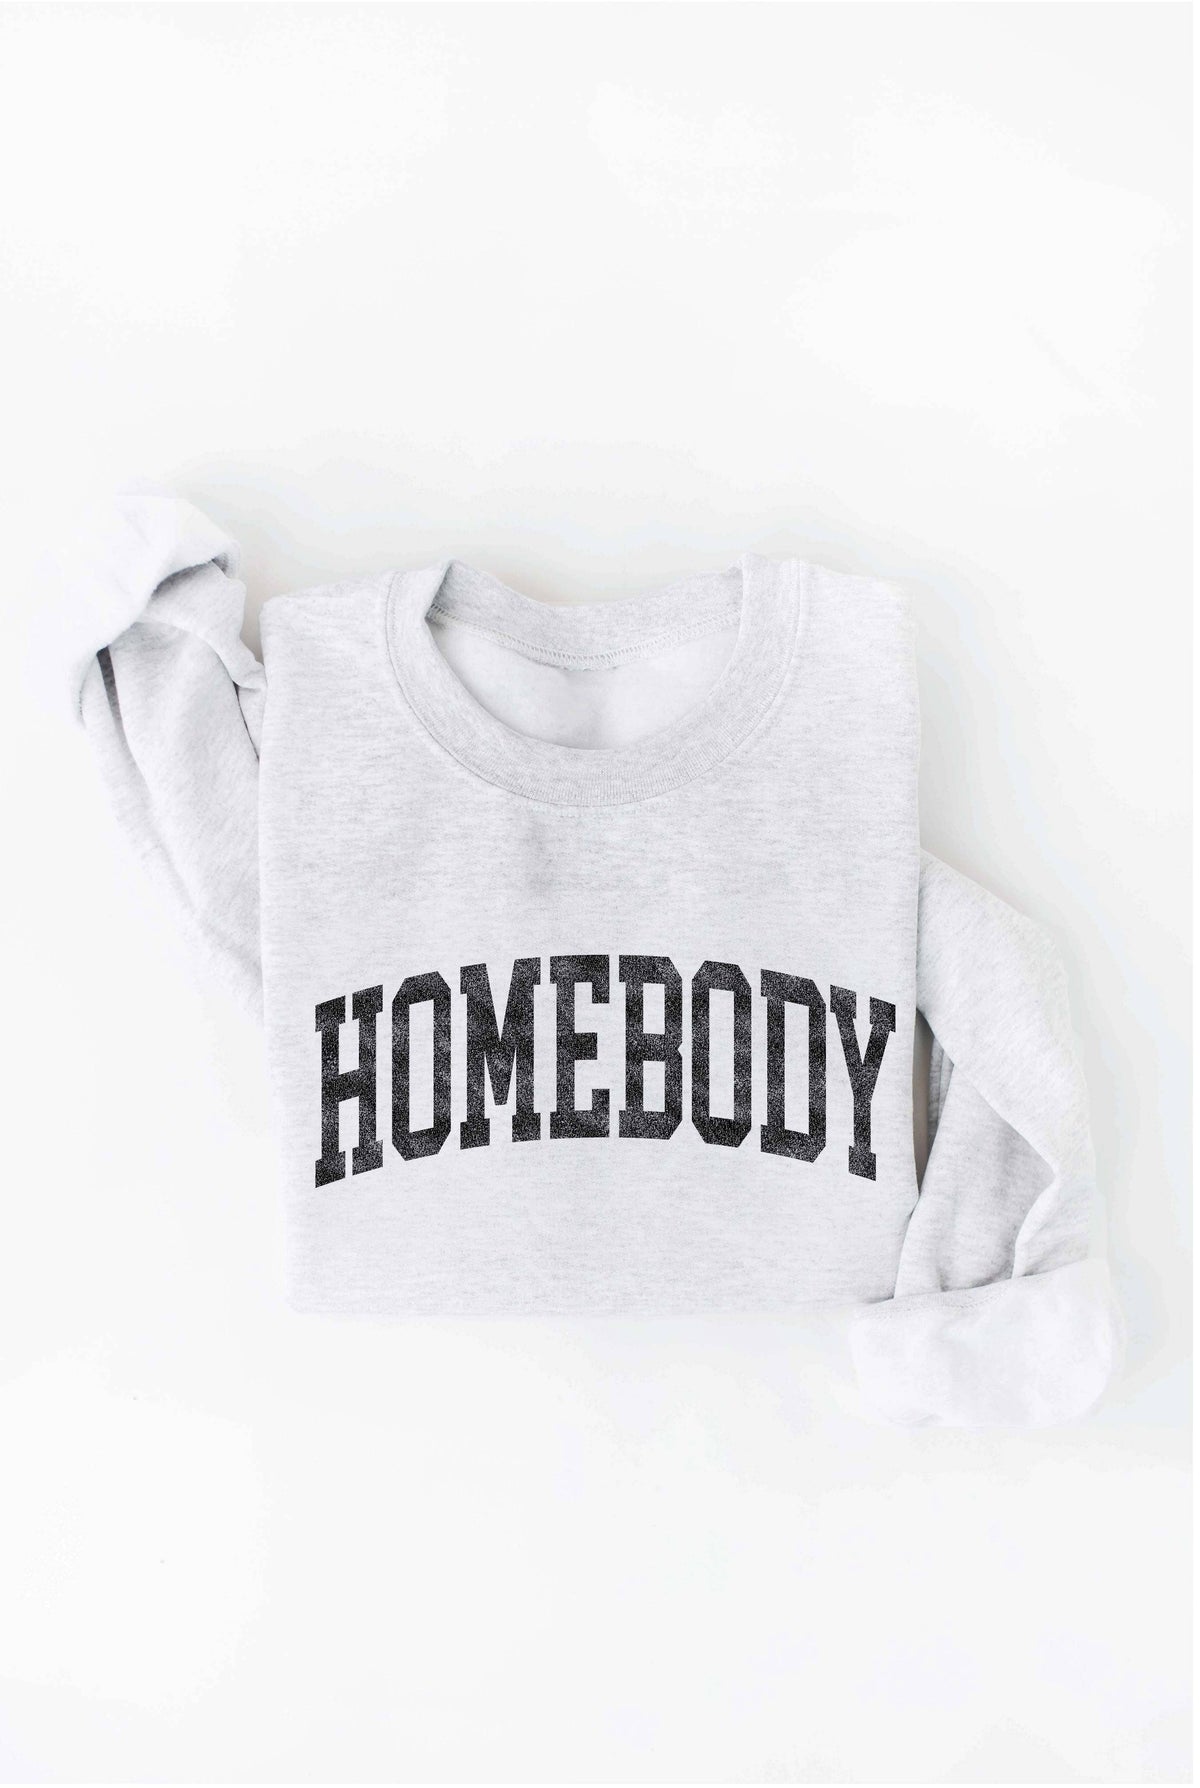 HOMEBODY Graphic Sweatshirt